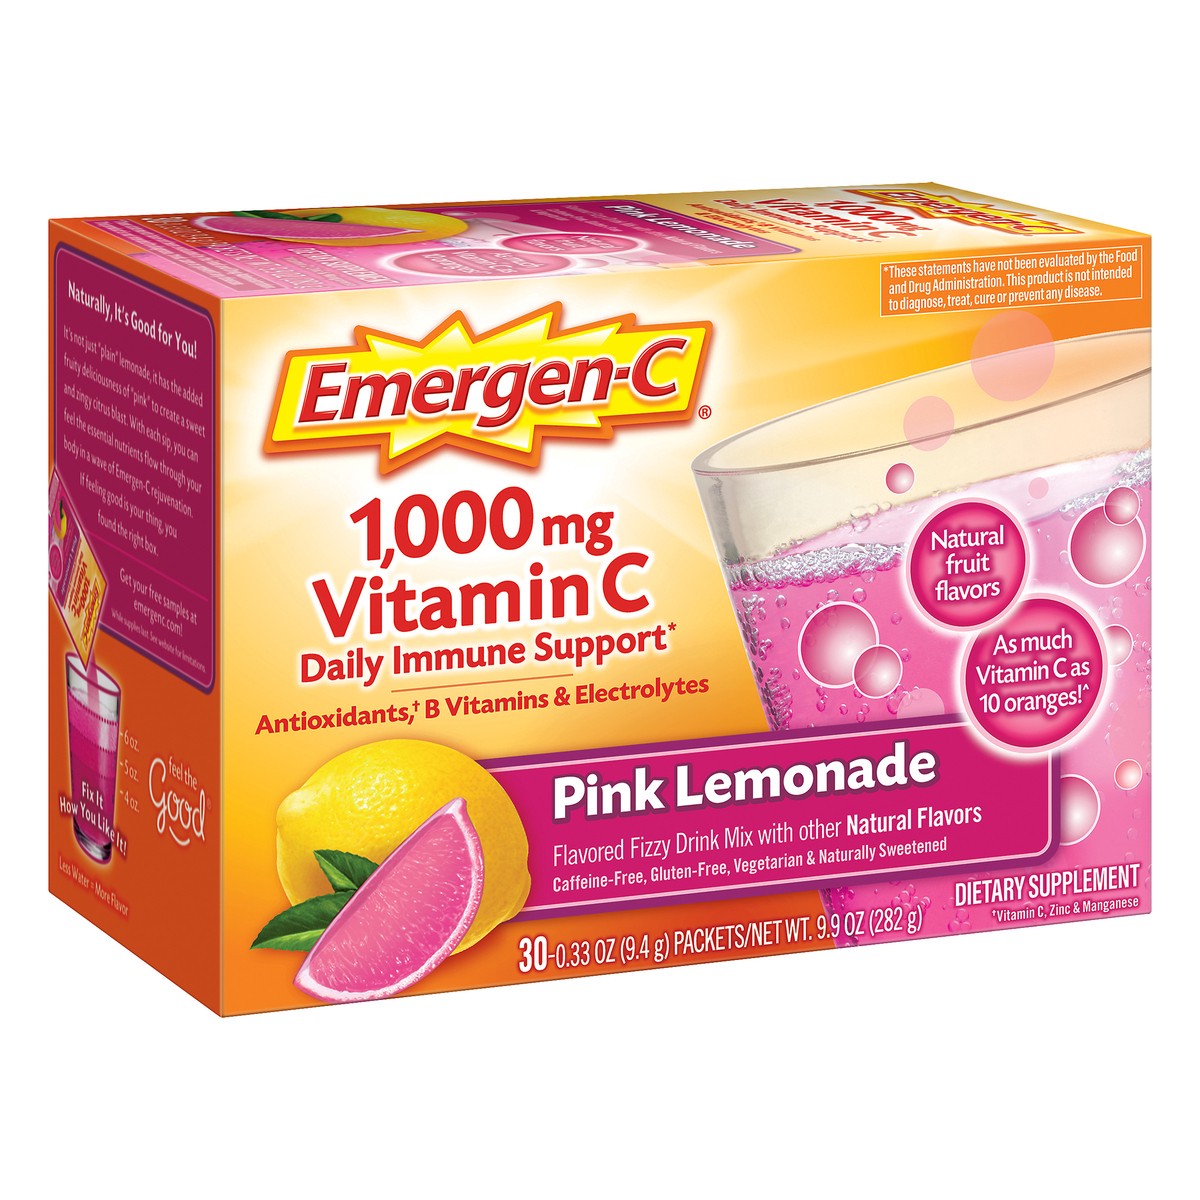 slide 7 of 11, Emergen-C Fizzy Drink Mix 1,000 mg Pink Lemonade Vitamin C 30 ea, 30 ct